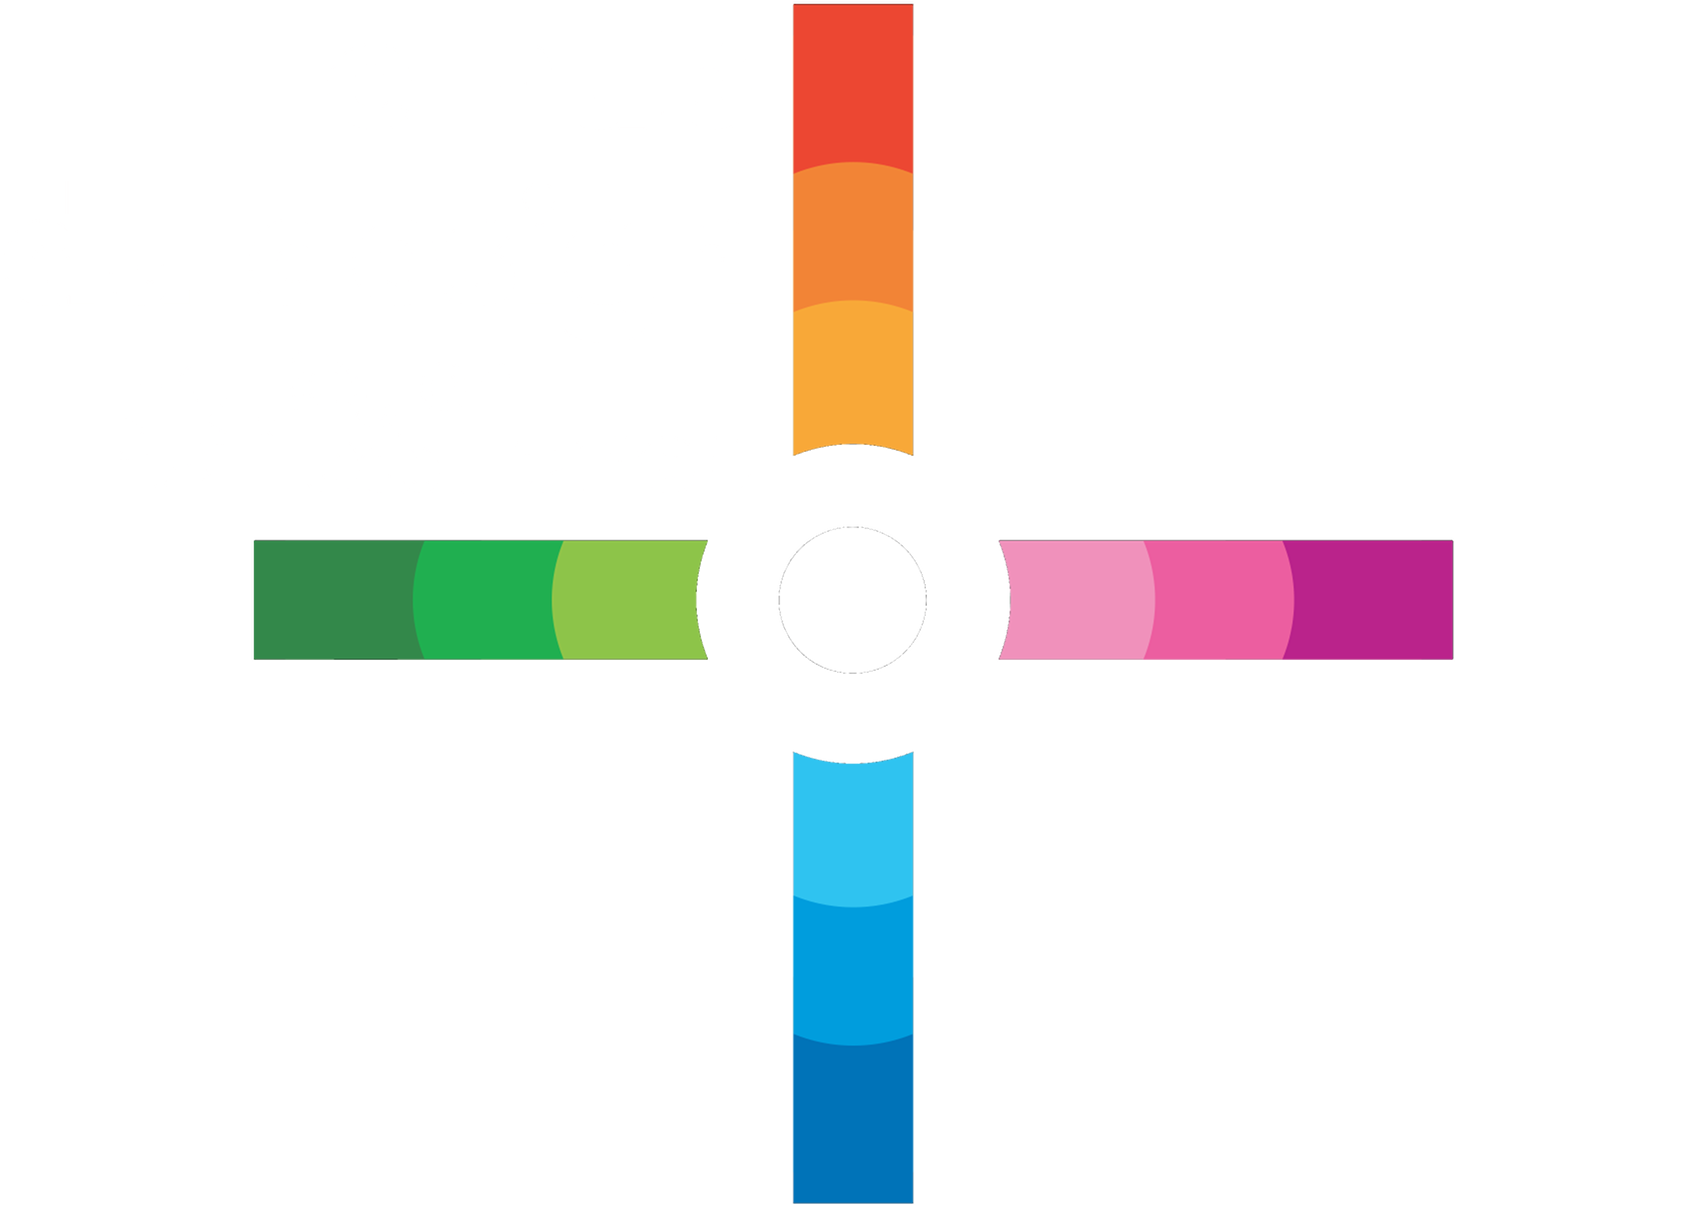 Le hub du design - Ile de France